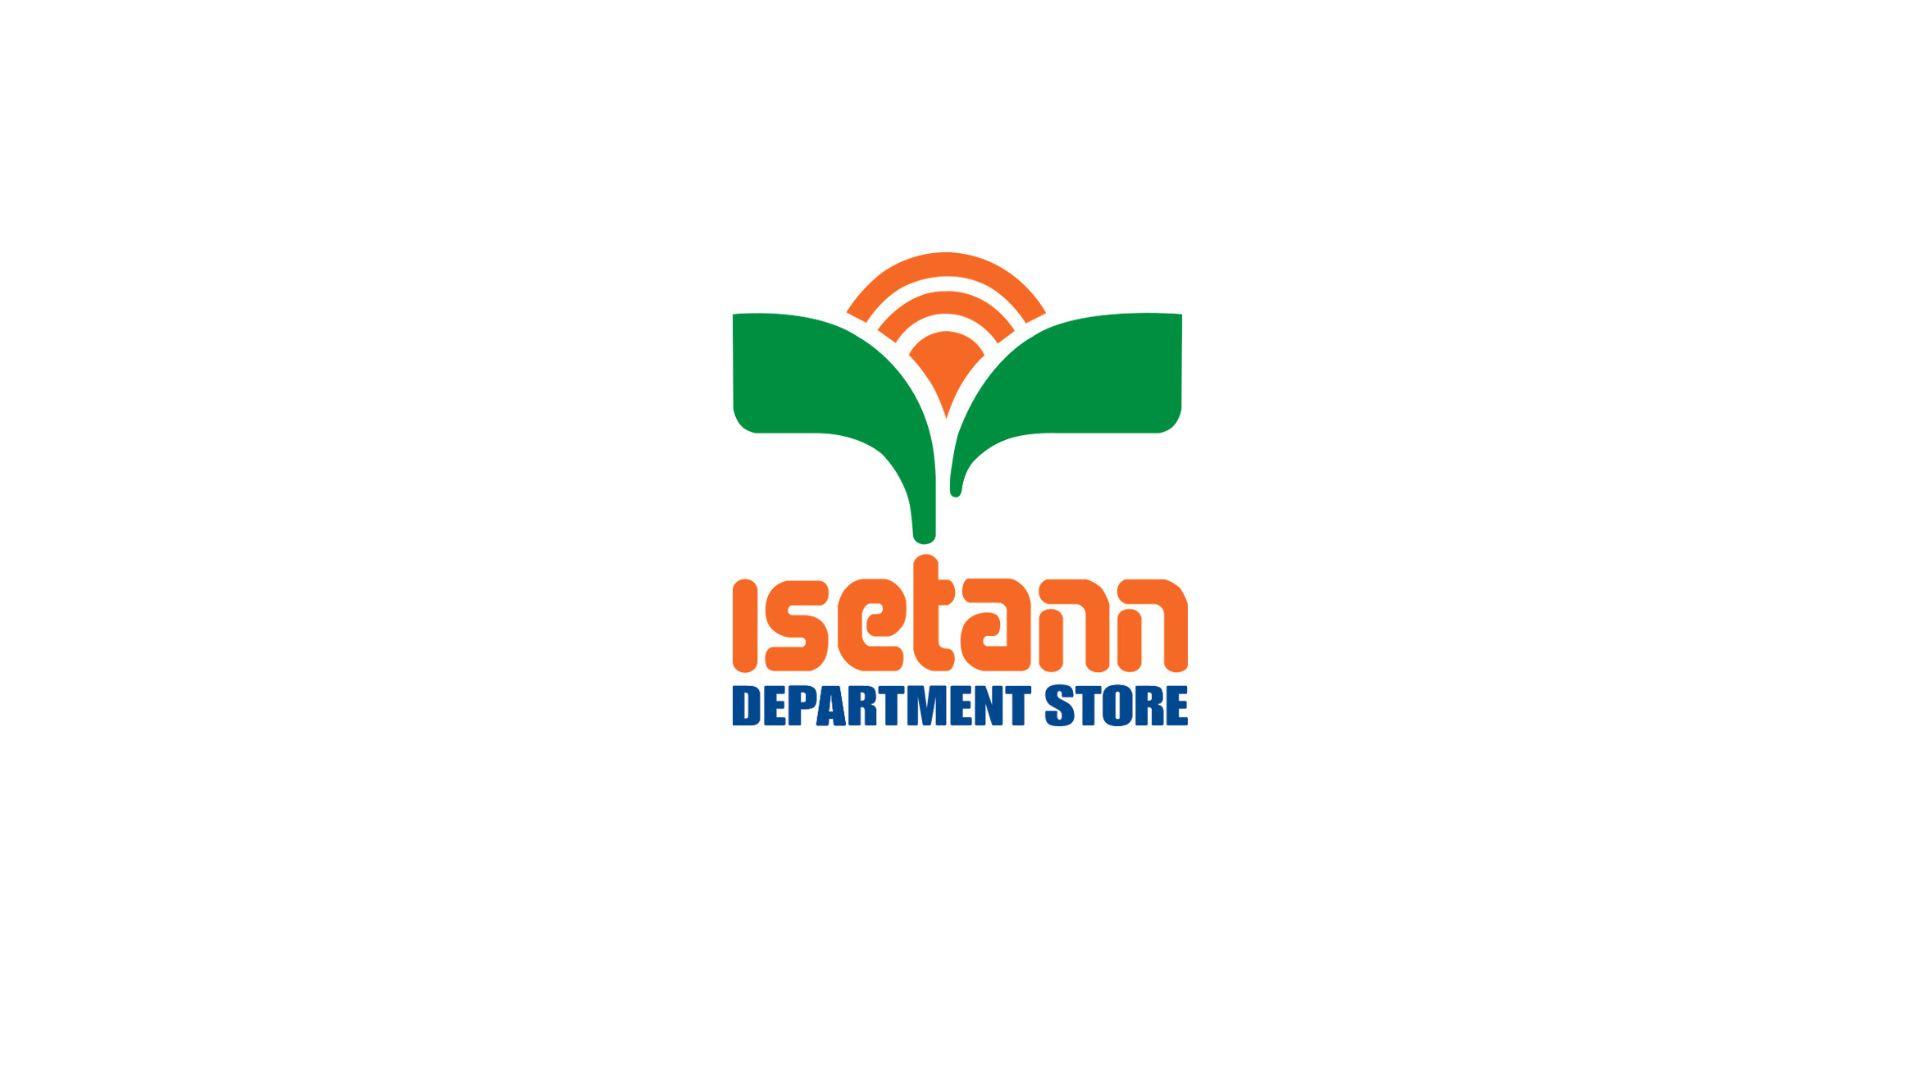 Isetann Department Store, Inc.